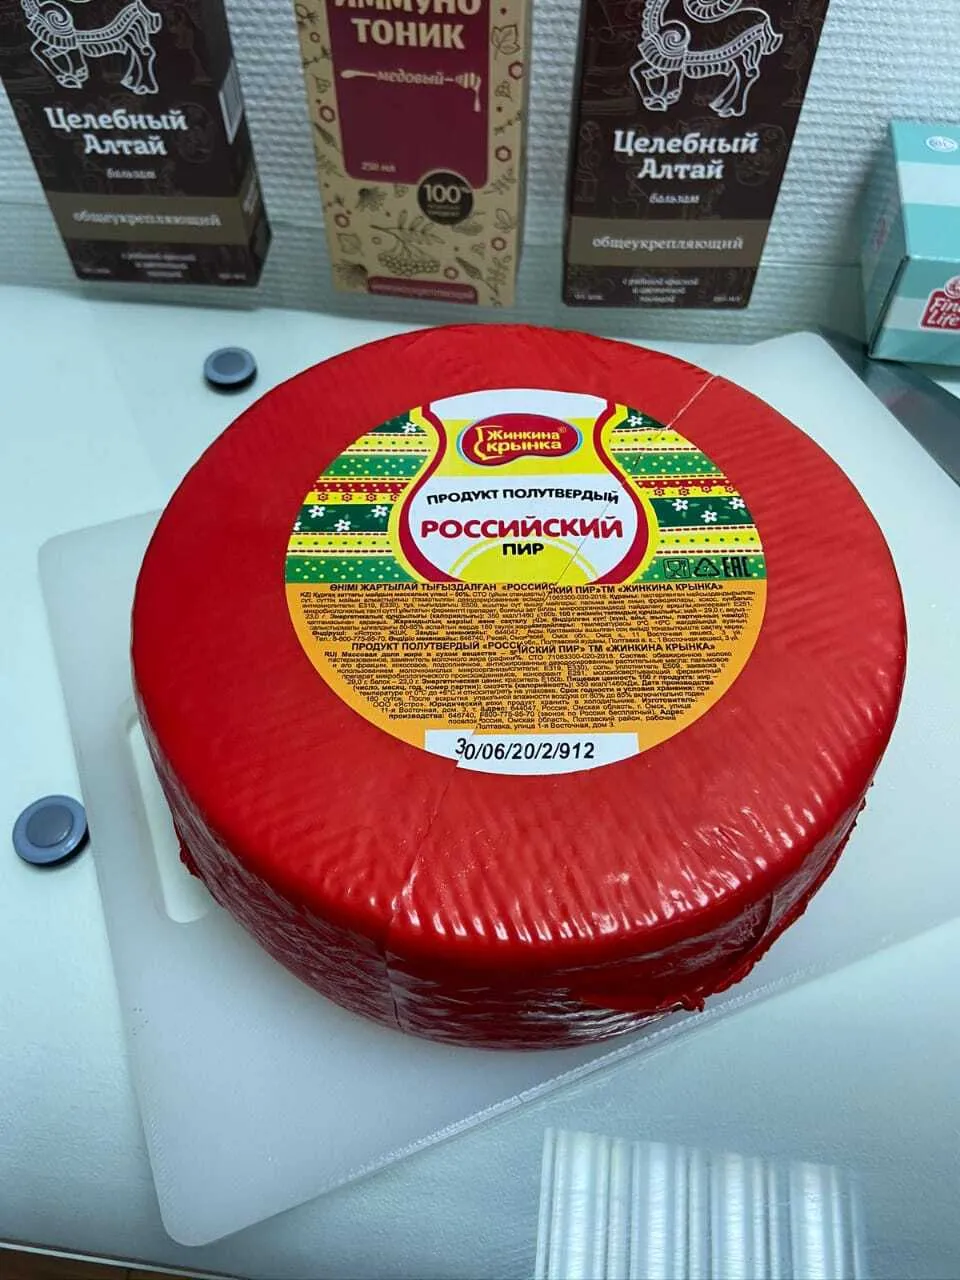 сыр, сырный продукт в Москве опт.цены в Москве 6